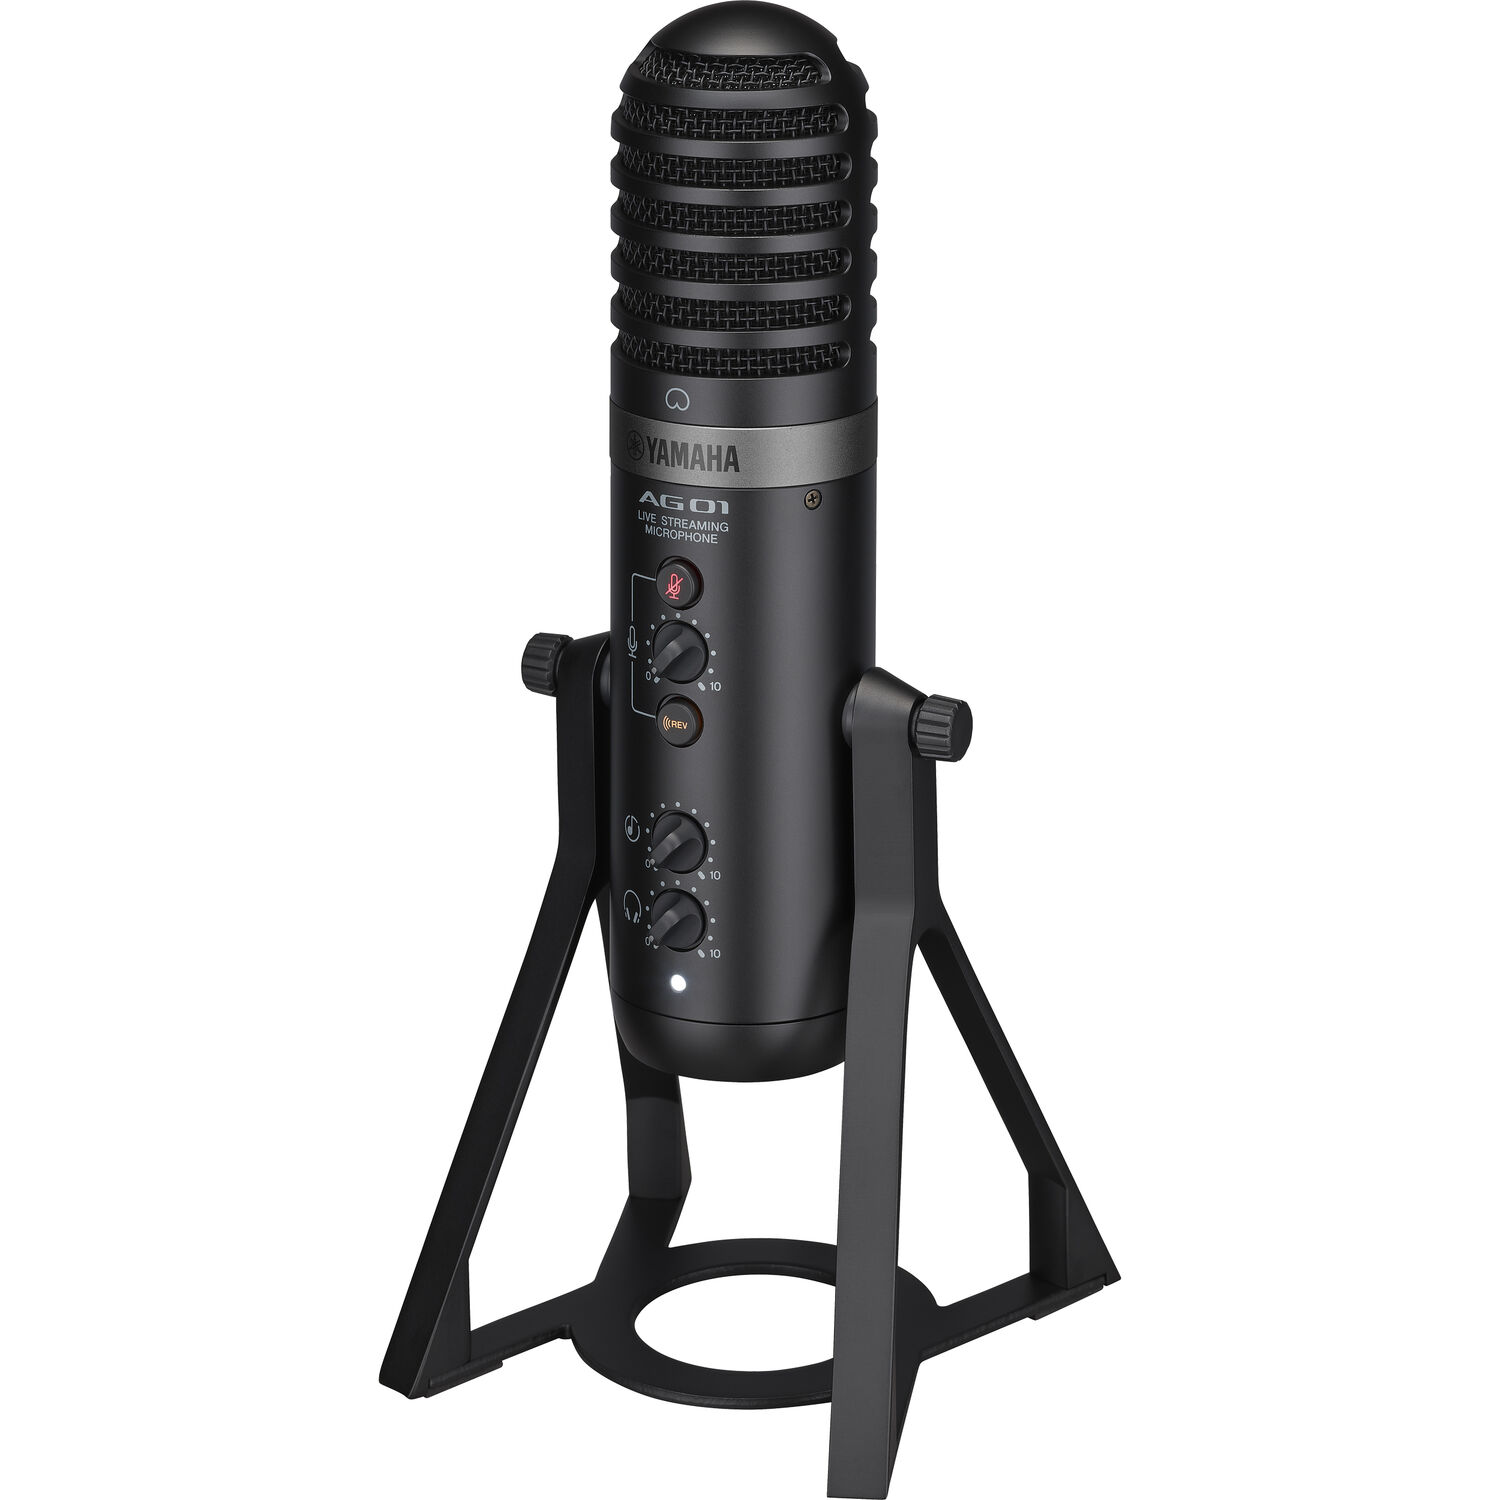 Micrófono Usb para Transmisión en Vivo Yamaha Ag01 Negro